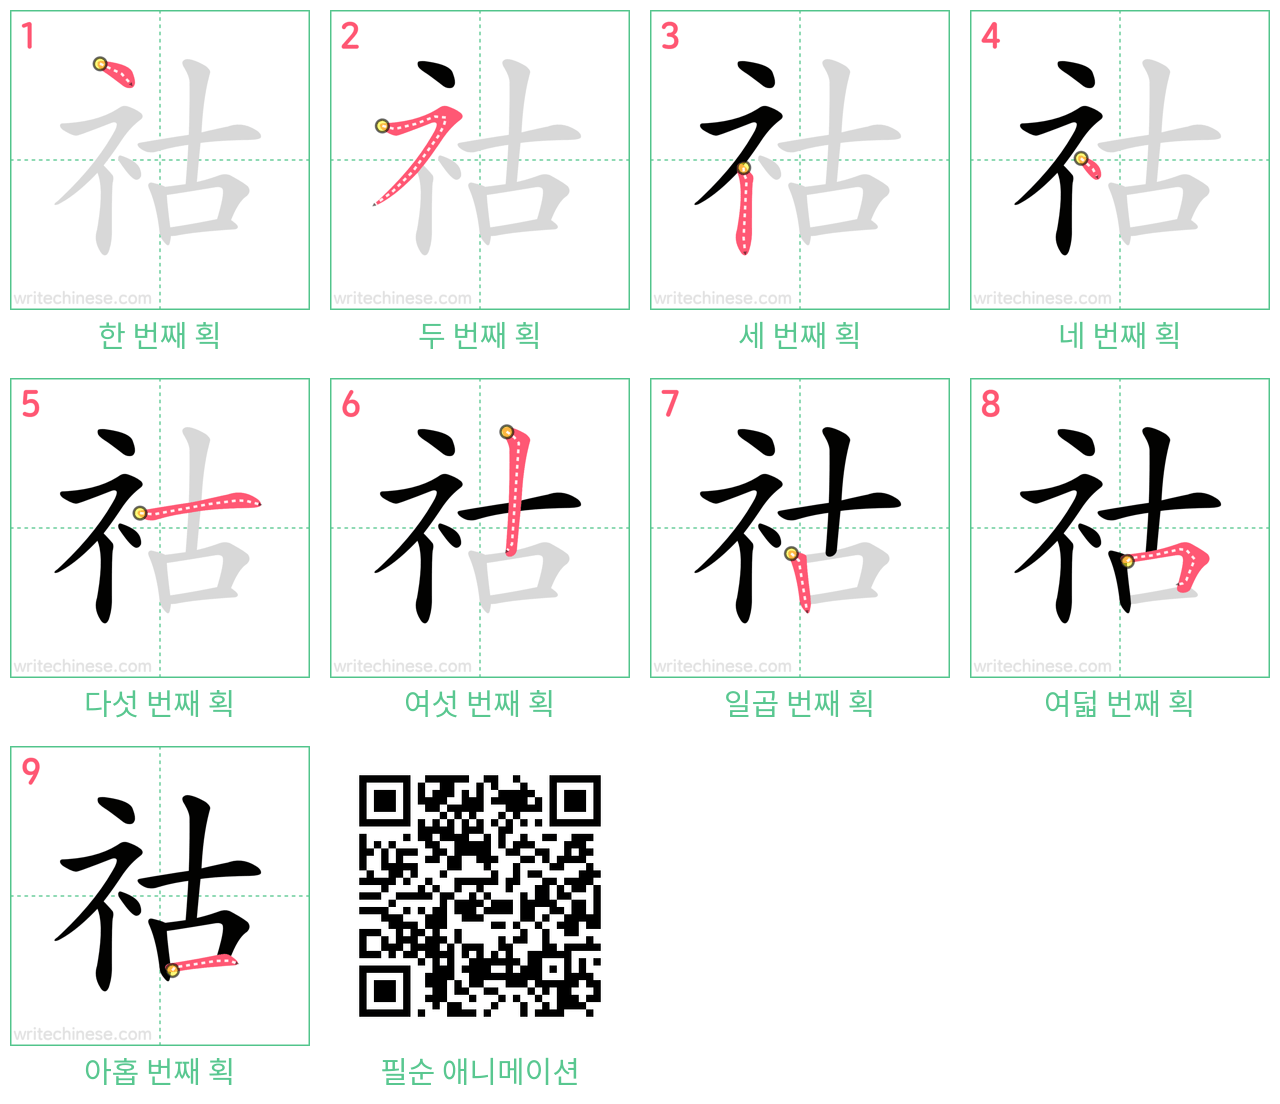 祜 step-by-step stroke order diagrams